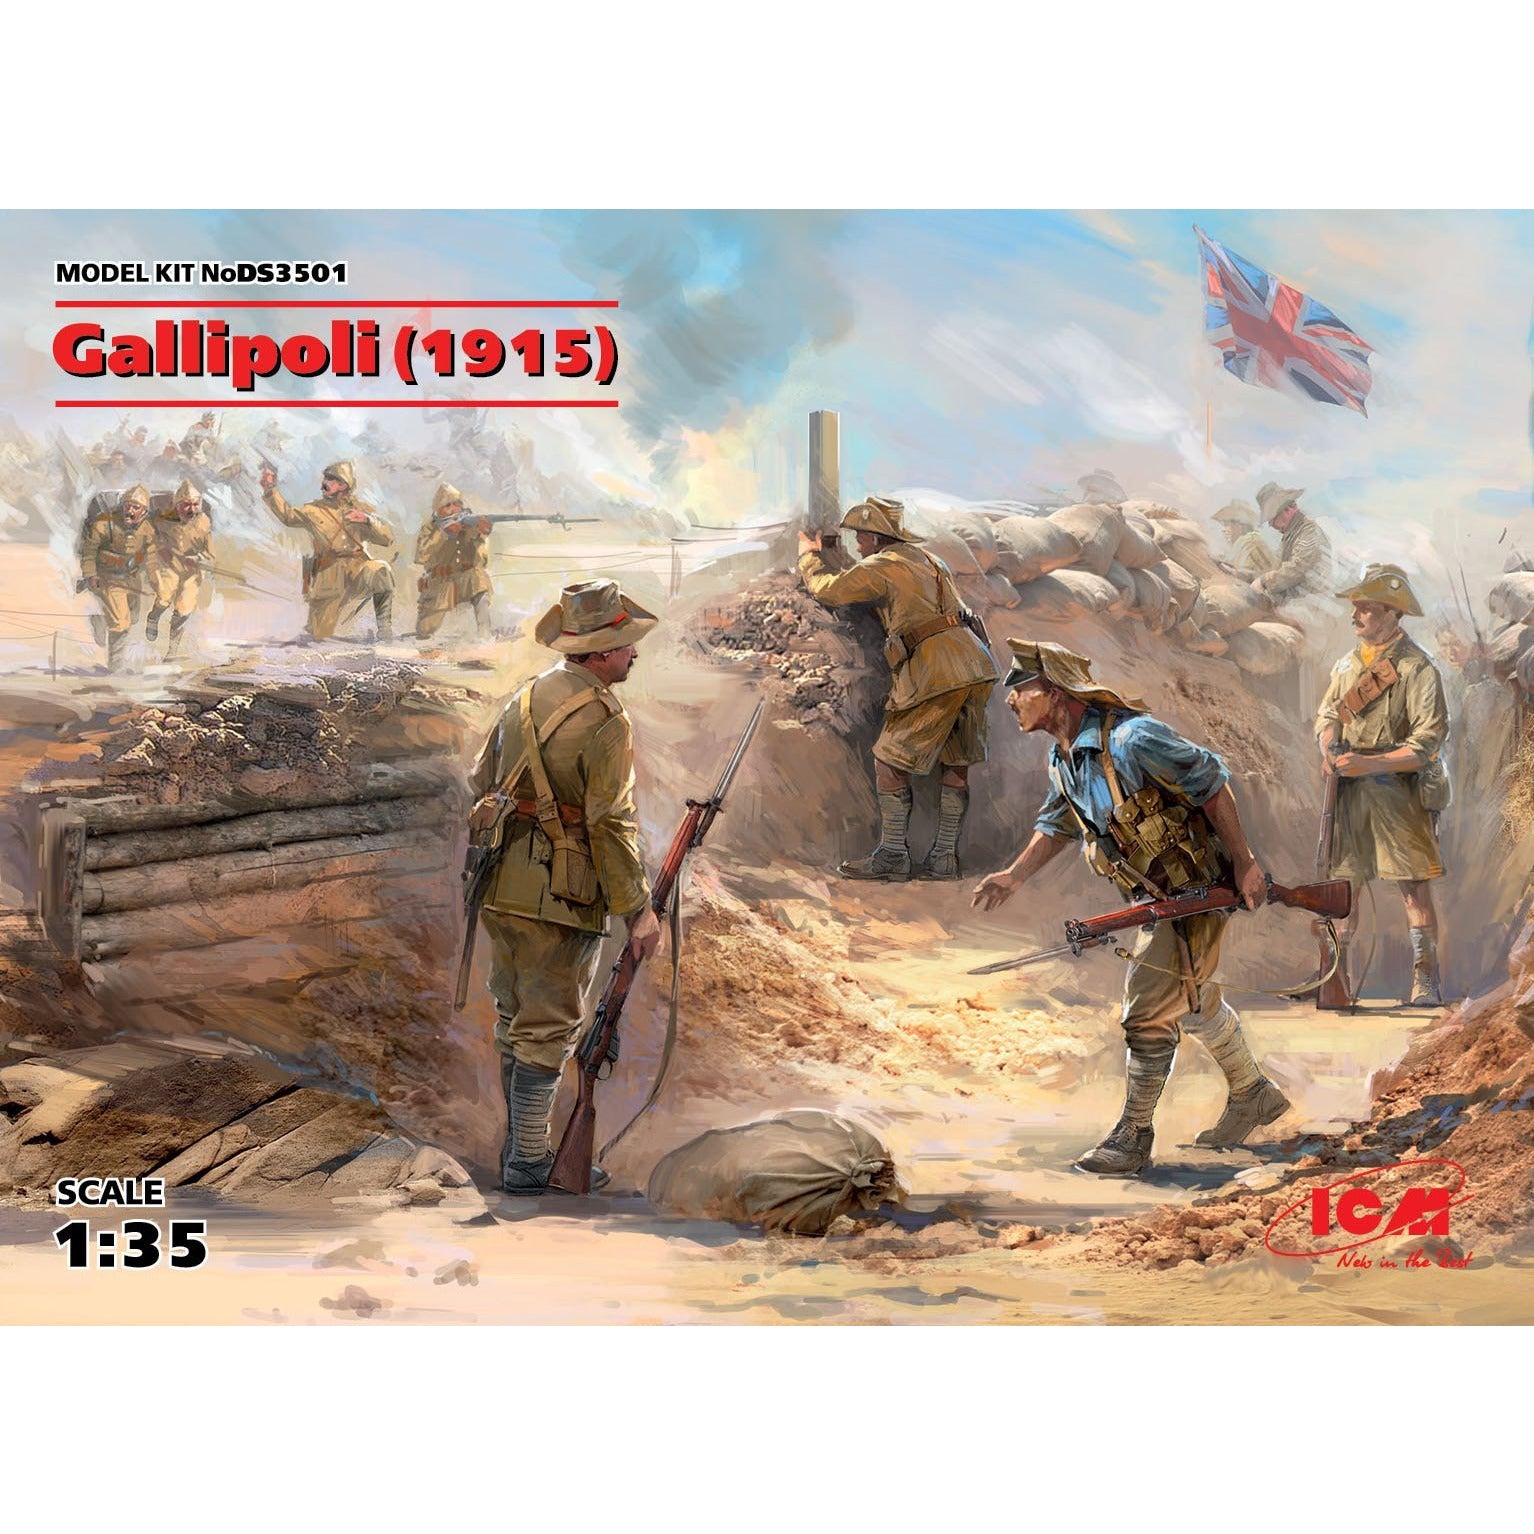 Gallipoli (1915) 1/35 by ICM